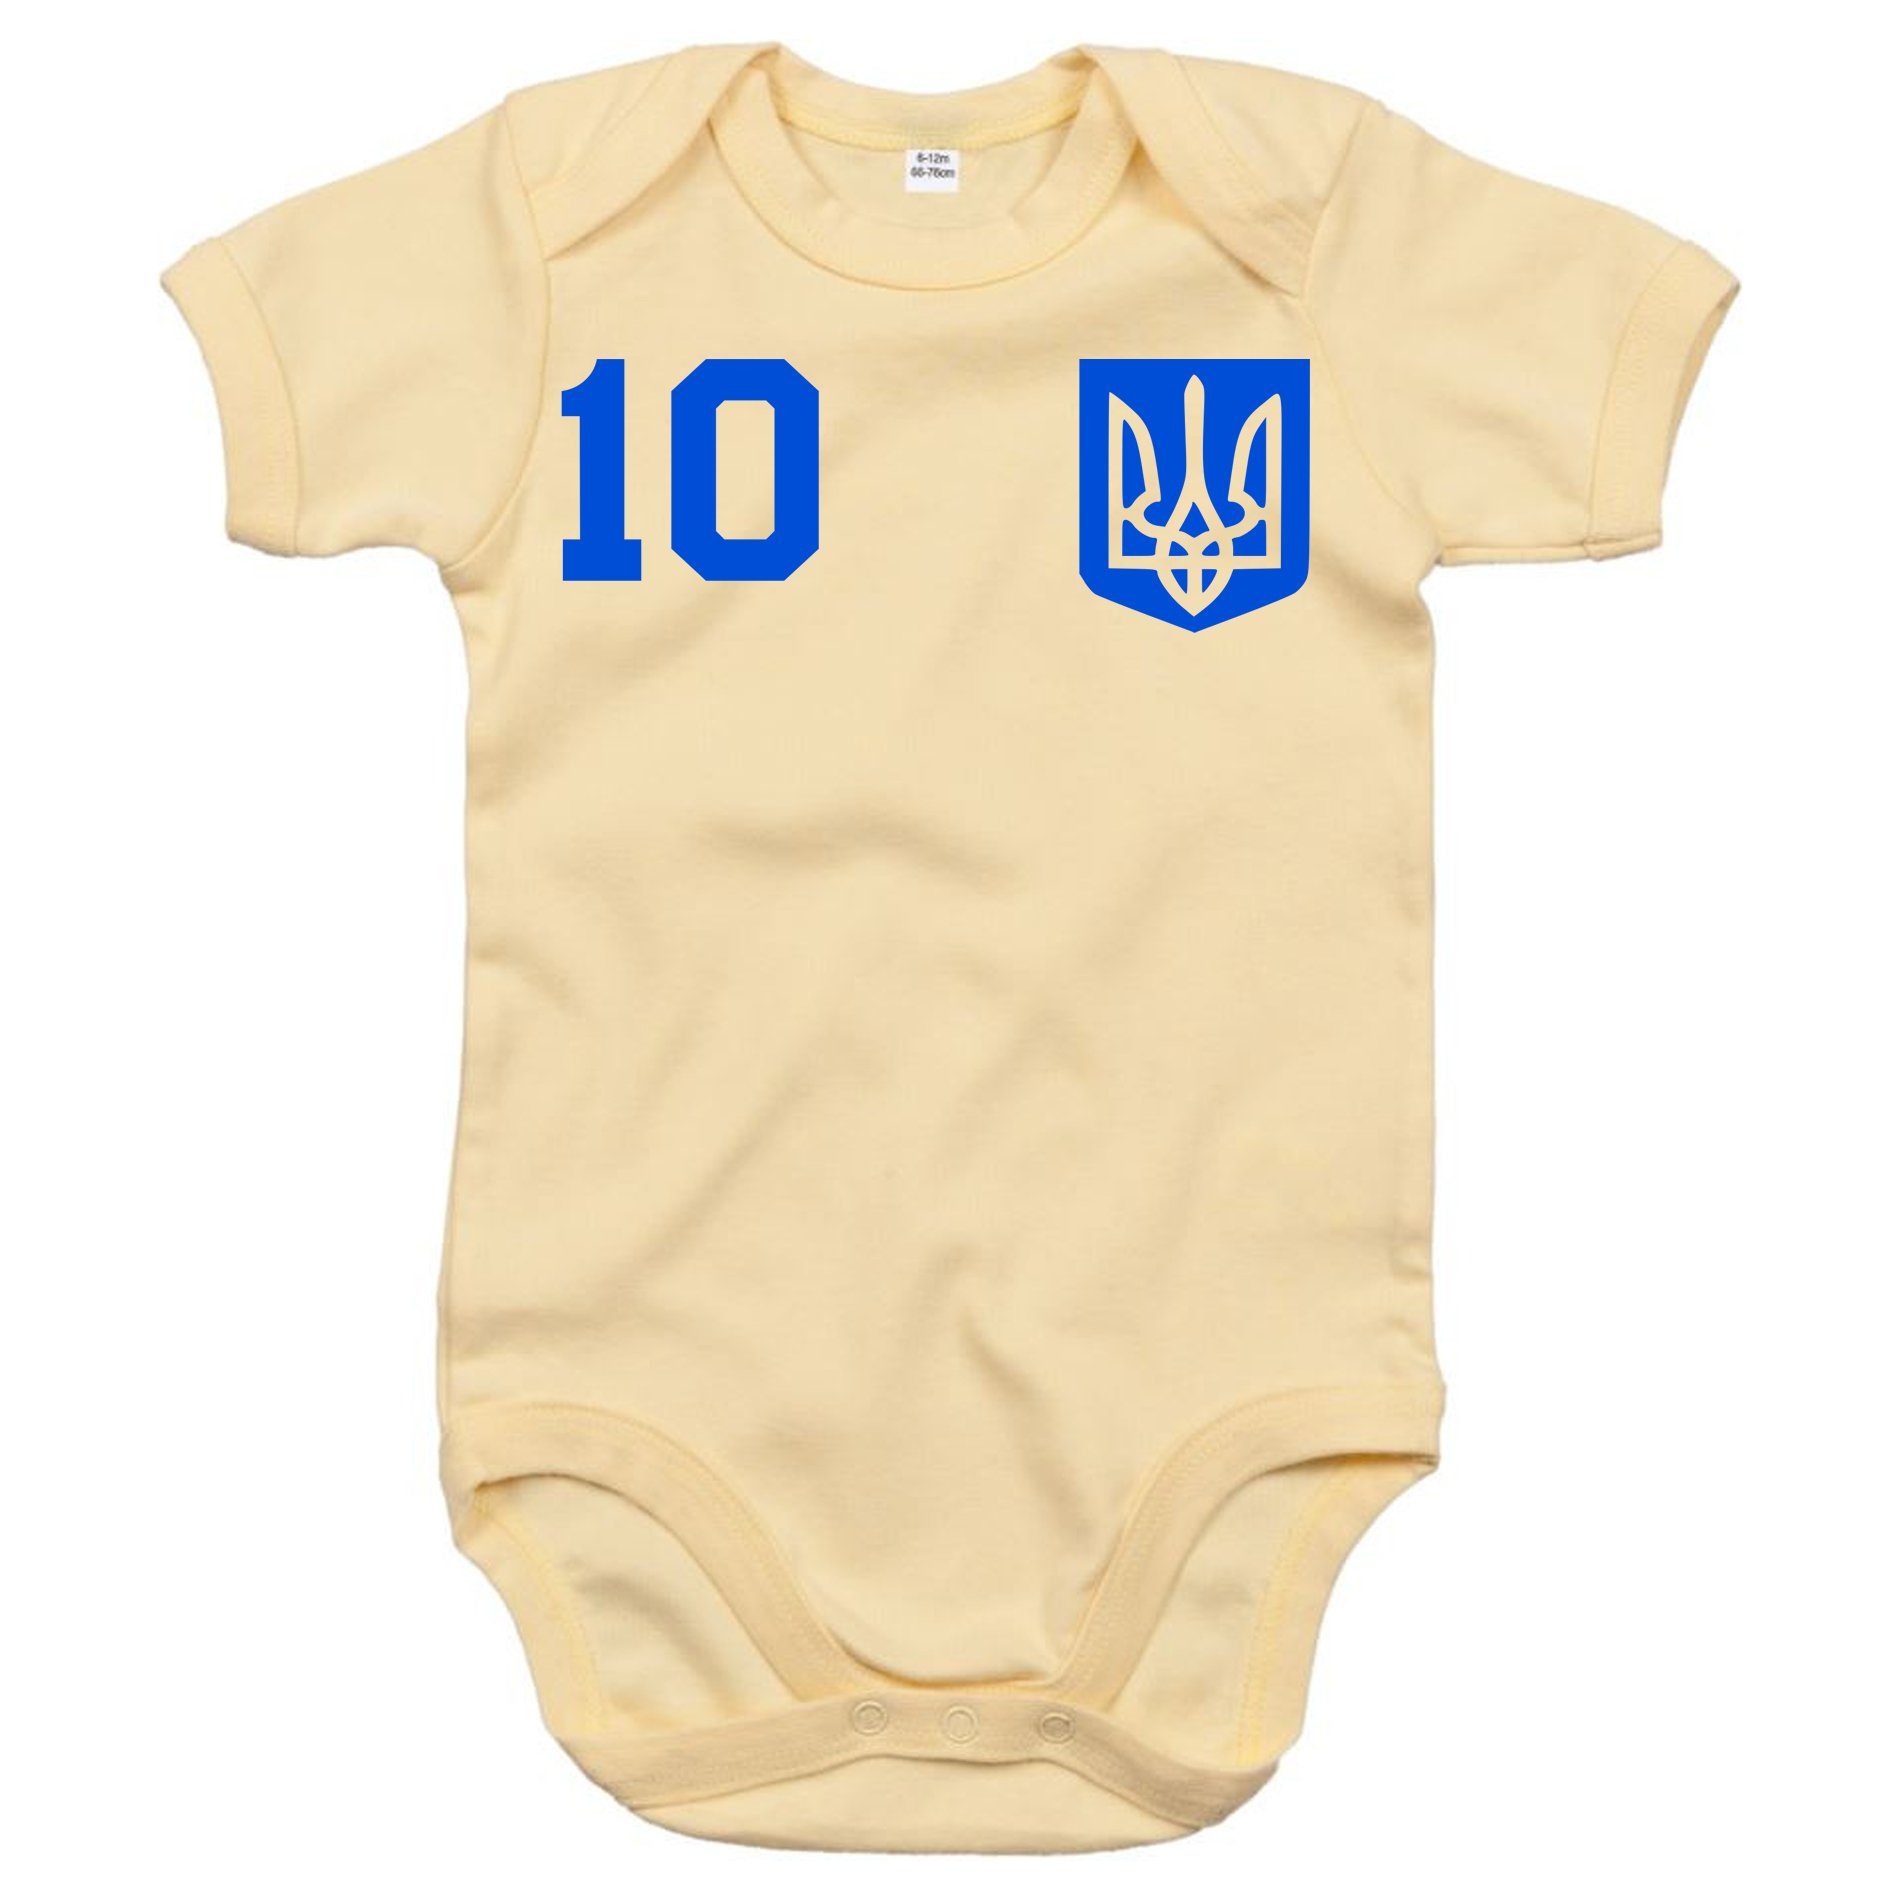 Blondie & Fußball Brownie Ukraine Kinder WM Baby Europa Trikot Strampler Meister Ukraina Sport